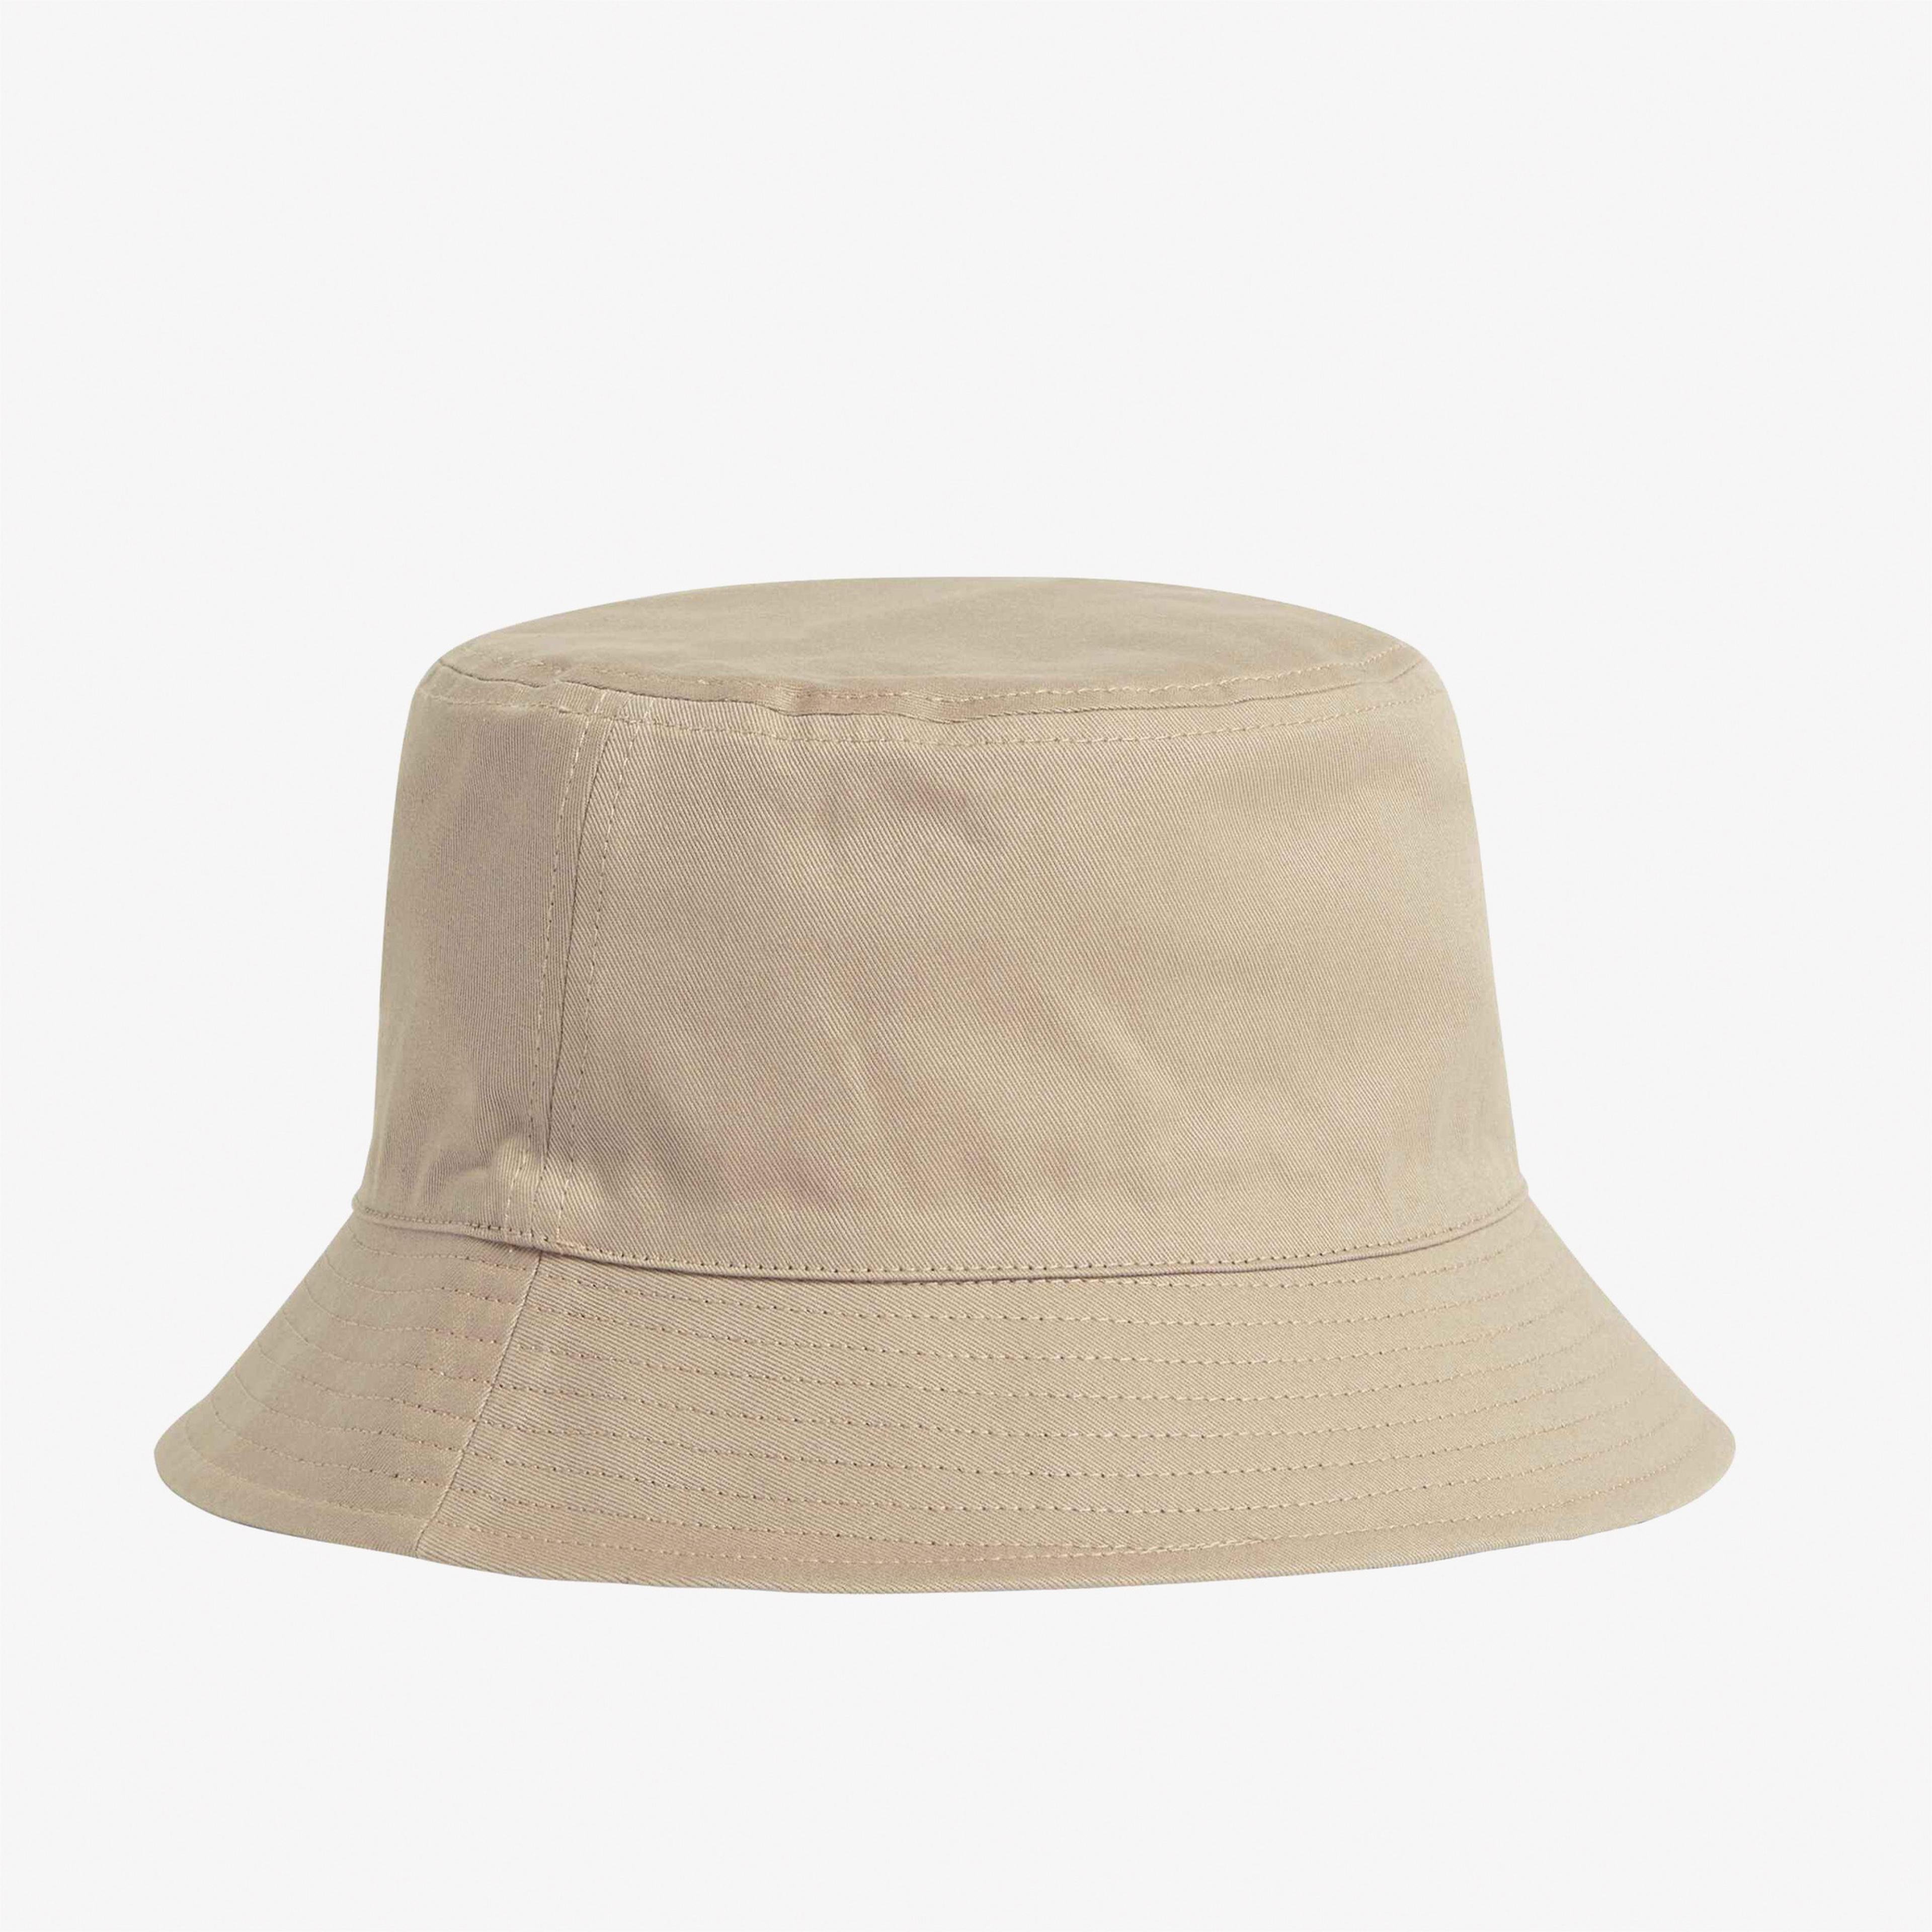 Calvin Klein Must Kadın Gri Şapka